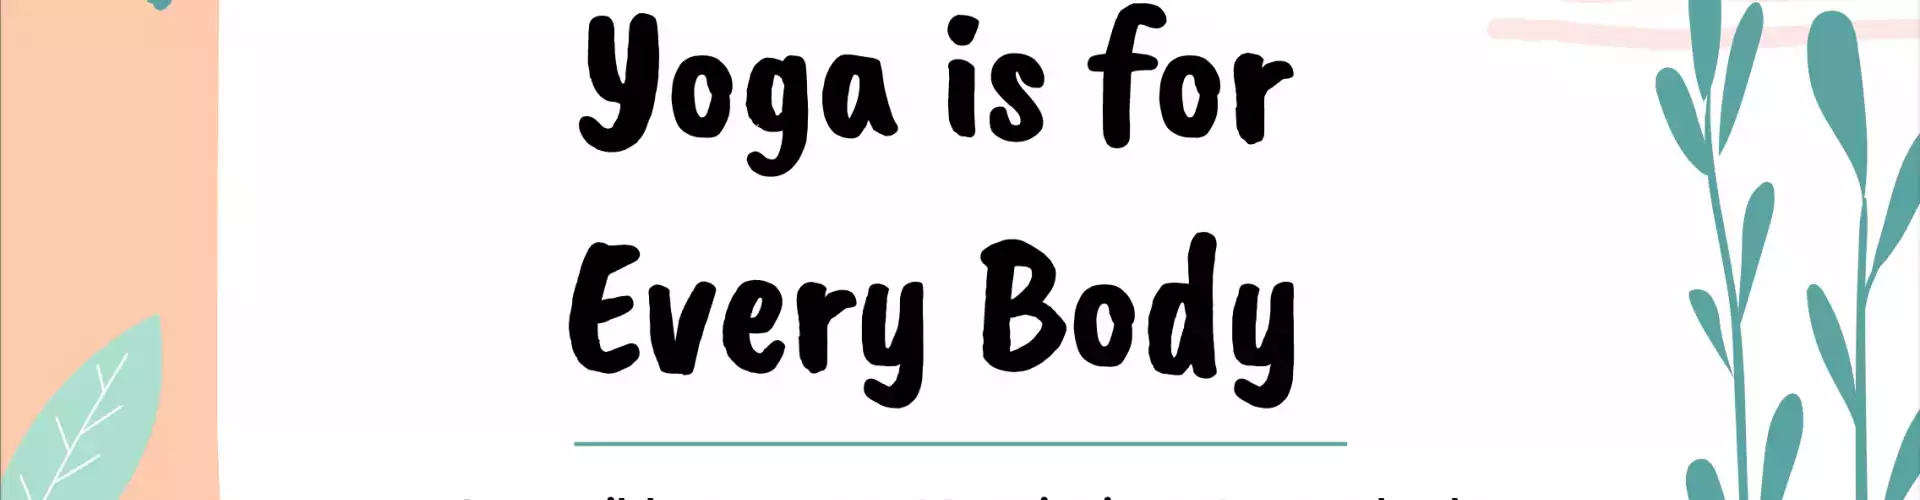 Йога для каждого тела: доступное движение, чтобы оживить ваше тело, сердце и разум